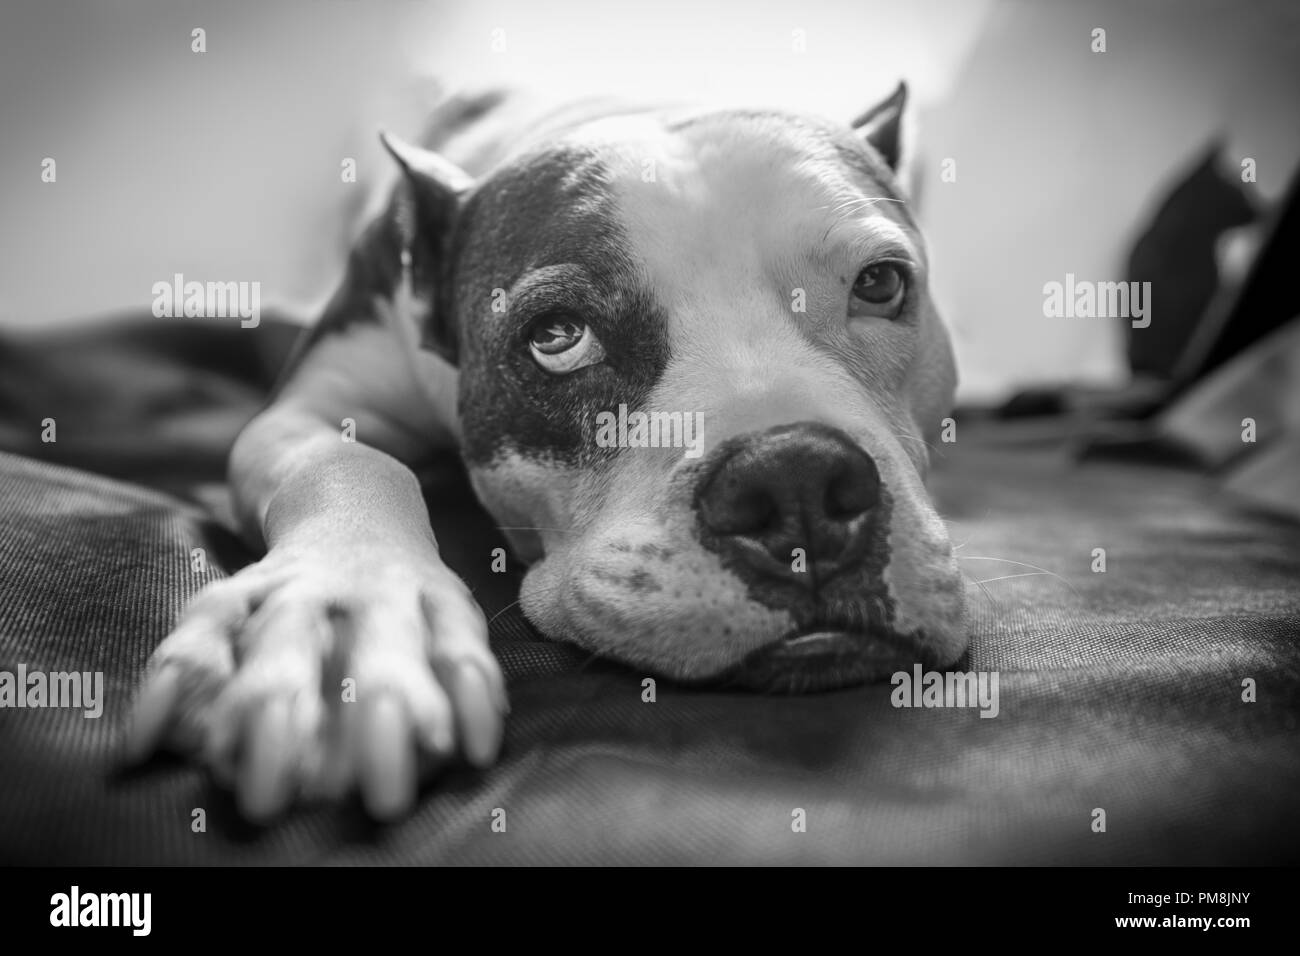 Un vieux American Staffordshire Terrier Pitbull dog pond sur une couverture avec rétroéclairage lumineux et un regard mélancolique épuisé sur son visage Banque D'Images